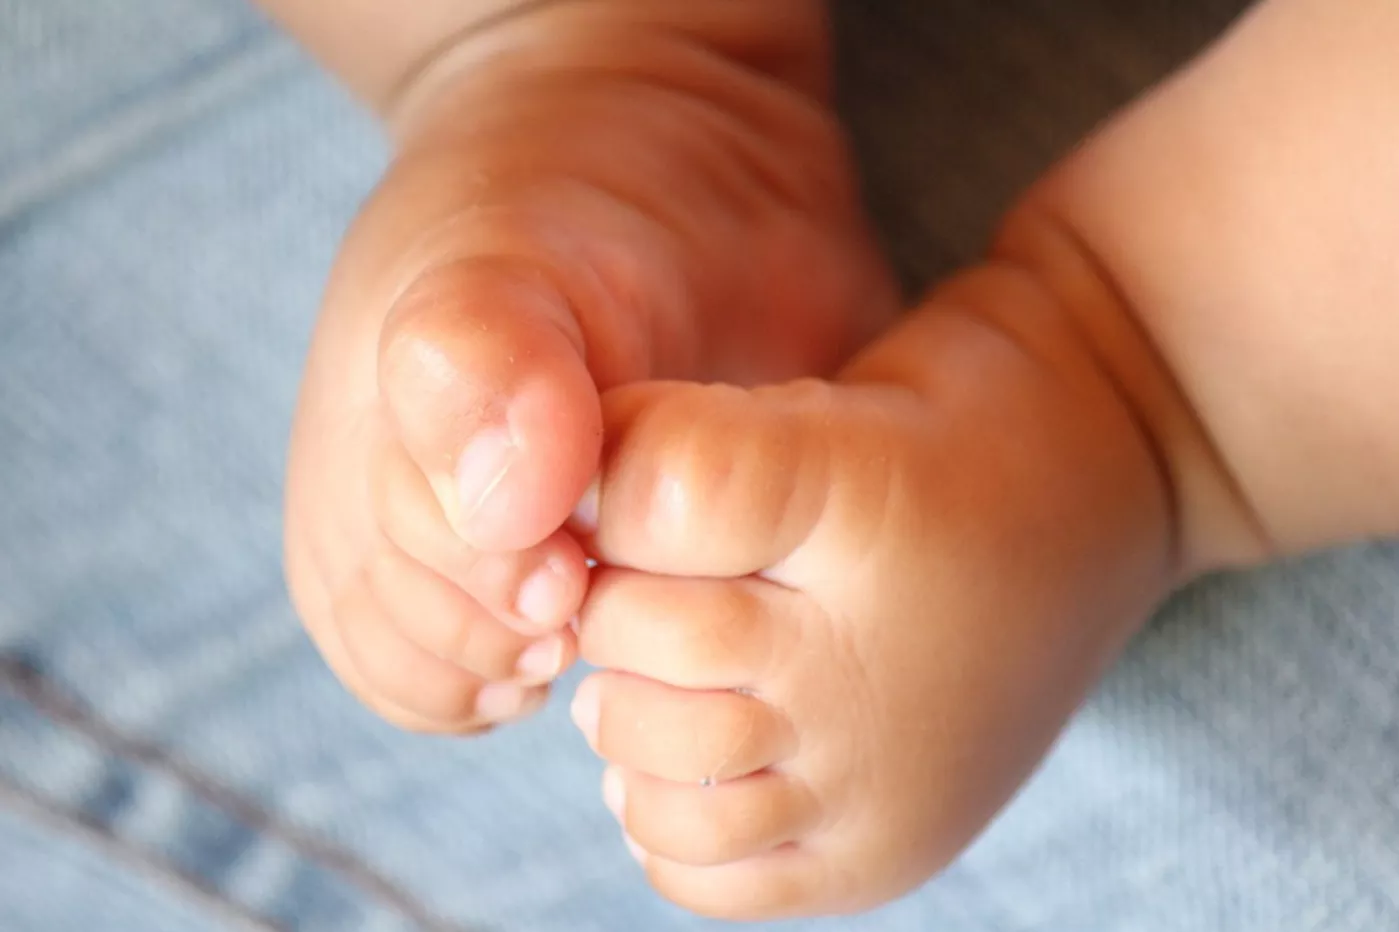 Se estima que un 3% de los niños nacidos presentan alguna malformación congénita.